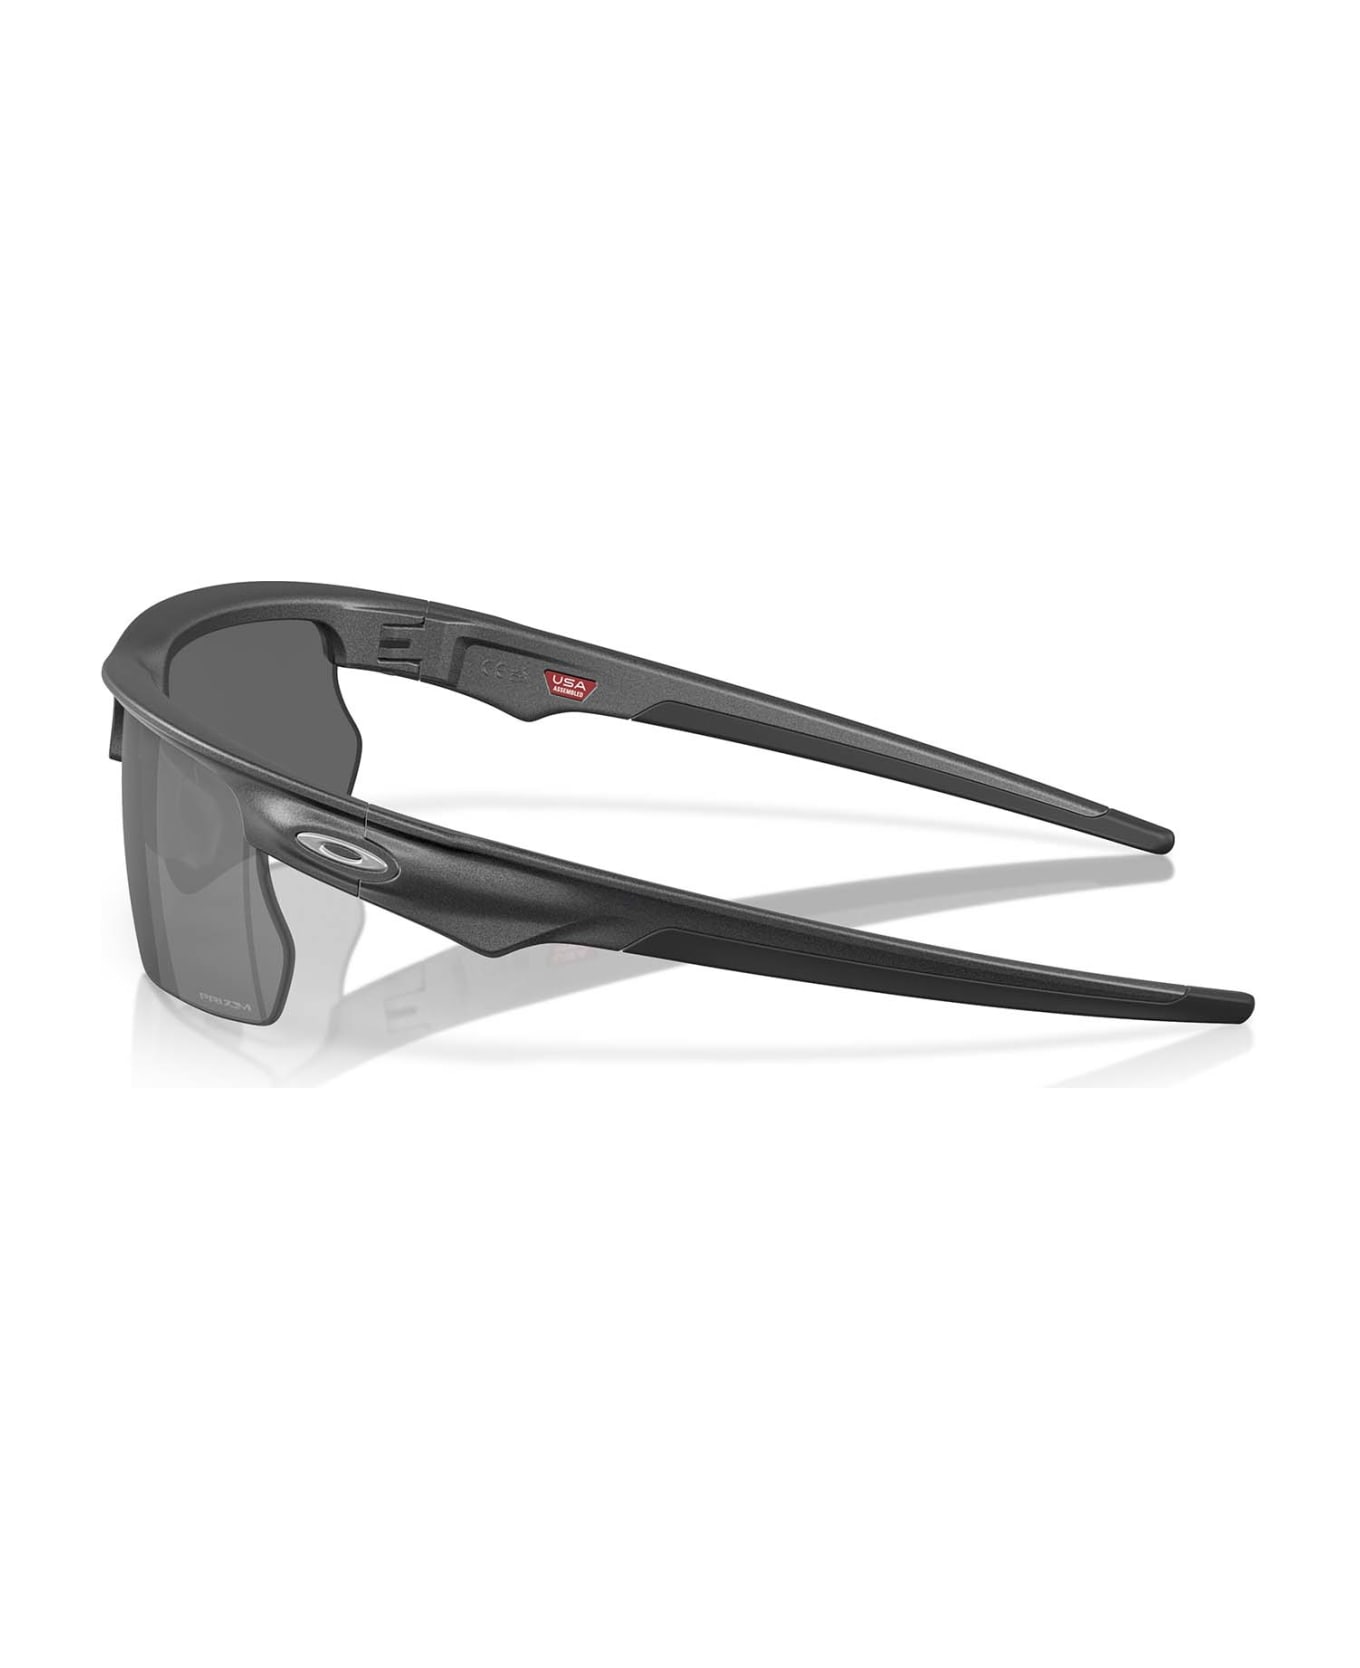 Oakley Oo9400 Steel Sunglasses - Steel